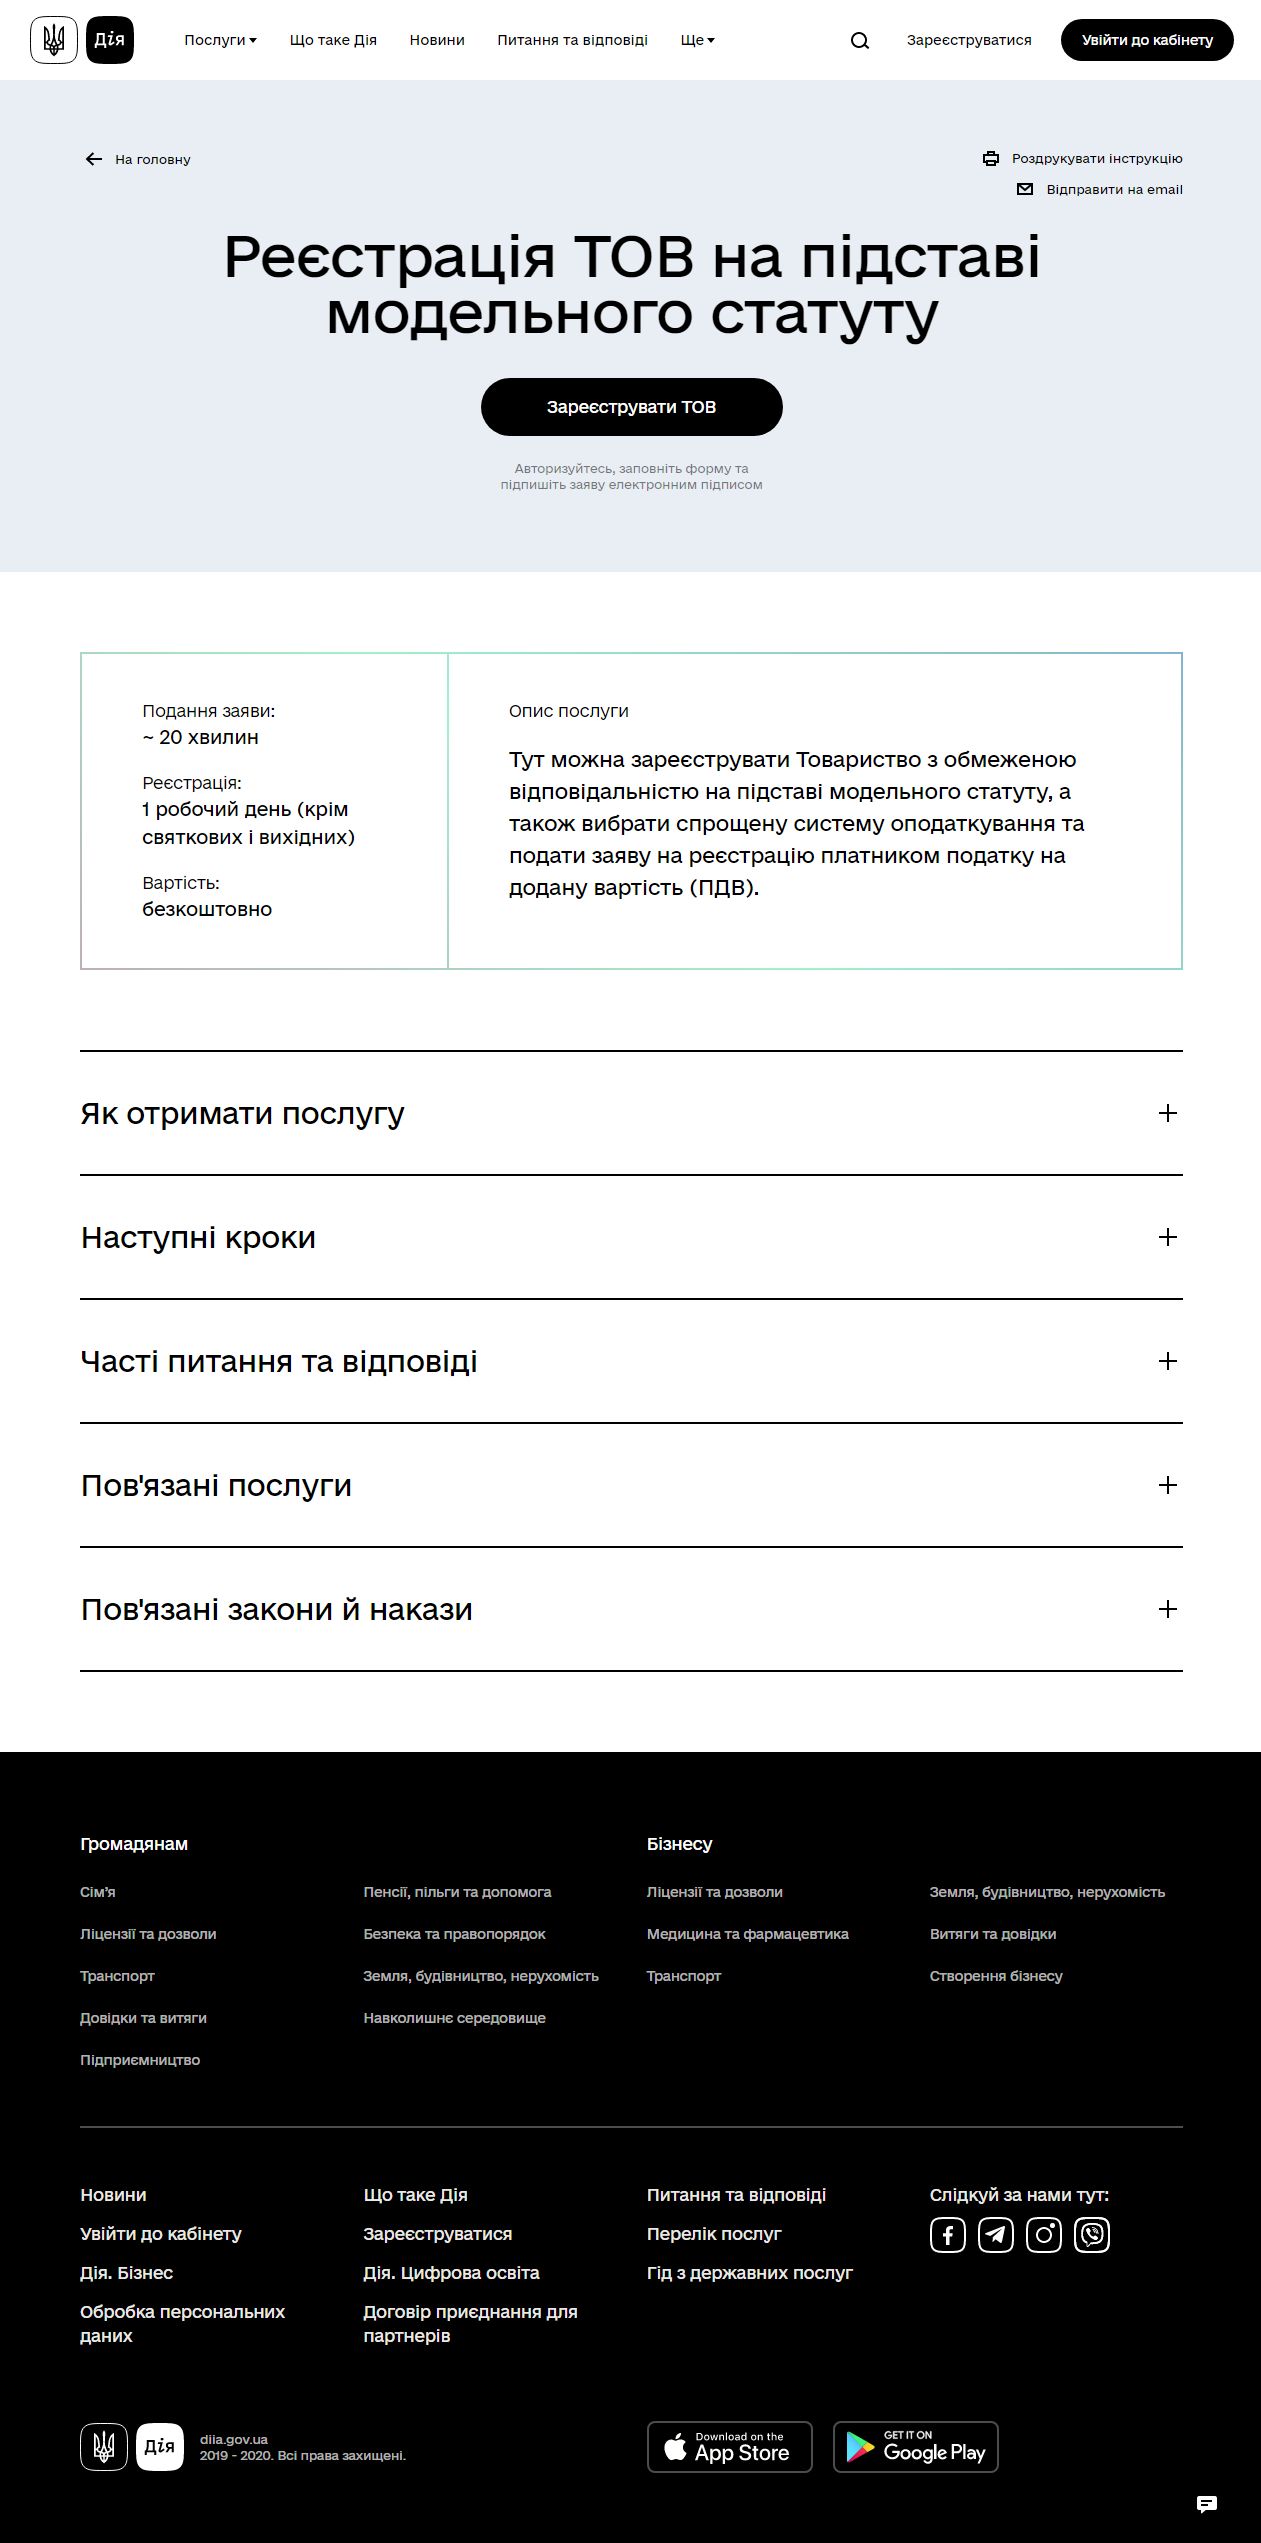 https://diia.gov.ua/services/reyestraciya-tov-na-pidstavi-modelnogo-statutu